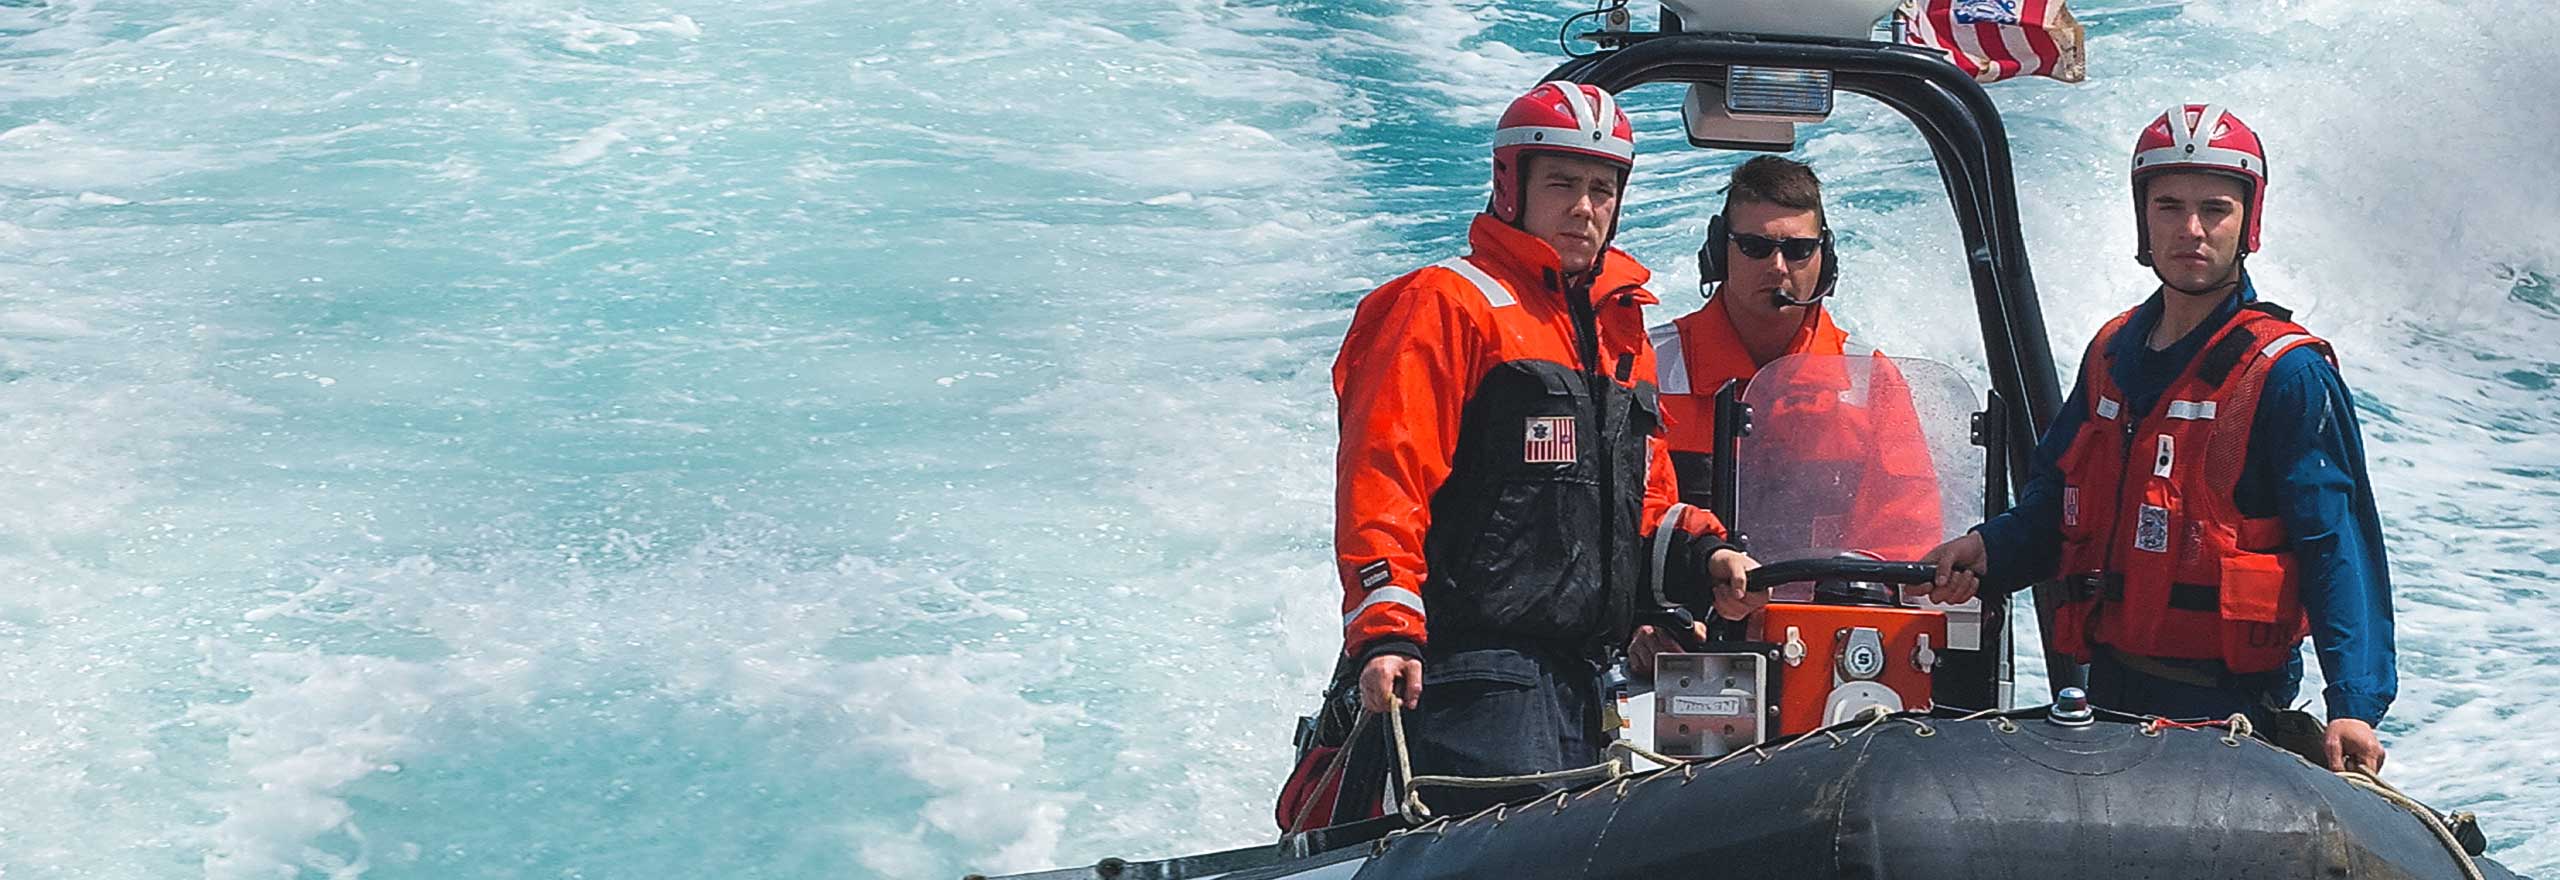 Miembros de la Guardia Costera de EE. UU. en barcos que se abren paso por el agua